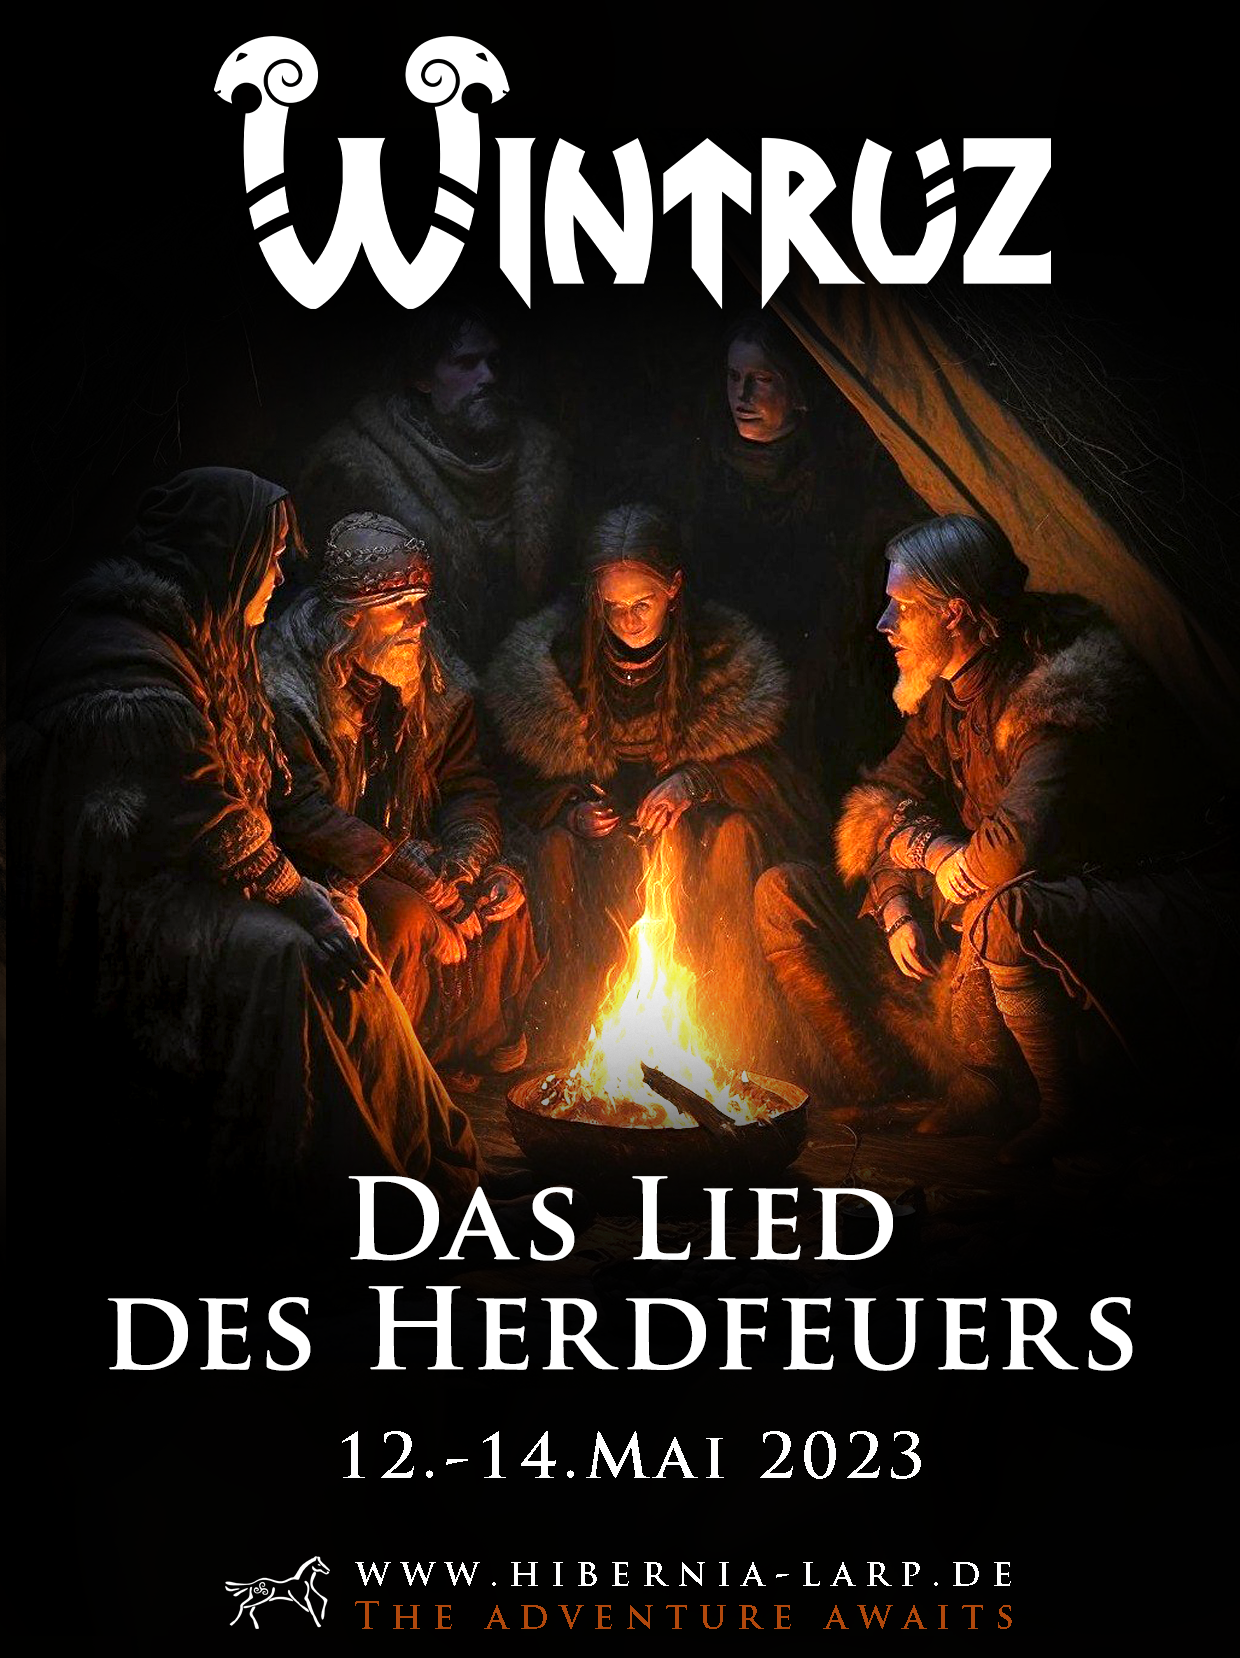 Poster Wintruz Das Lied des Herdfeuers vom 12.-14.Mai 2023. Bild von Benjamin Vogt / Hibernia LARP.